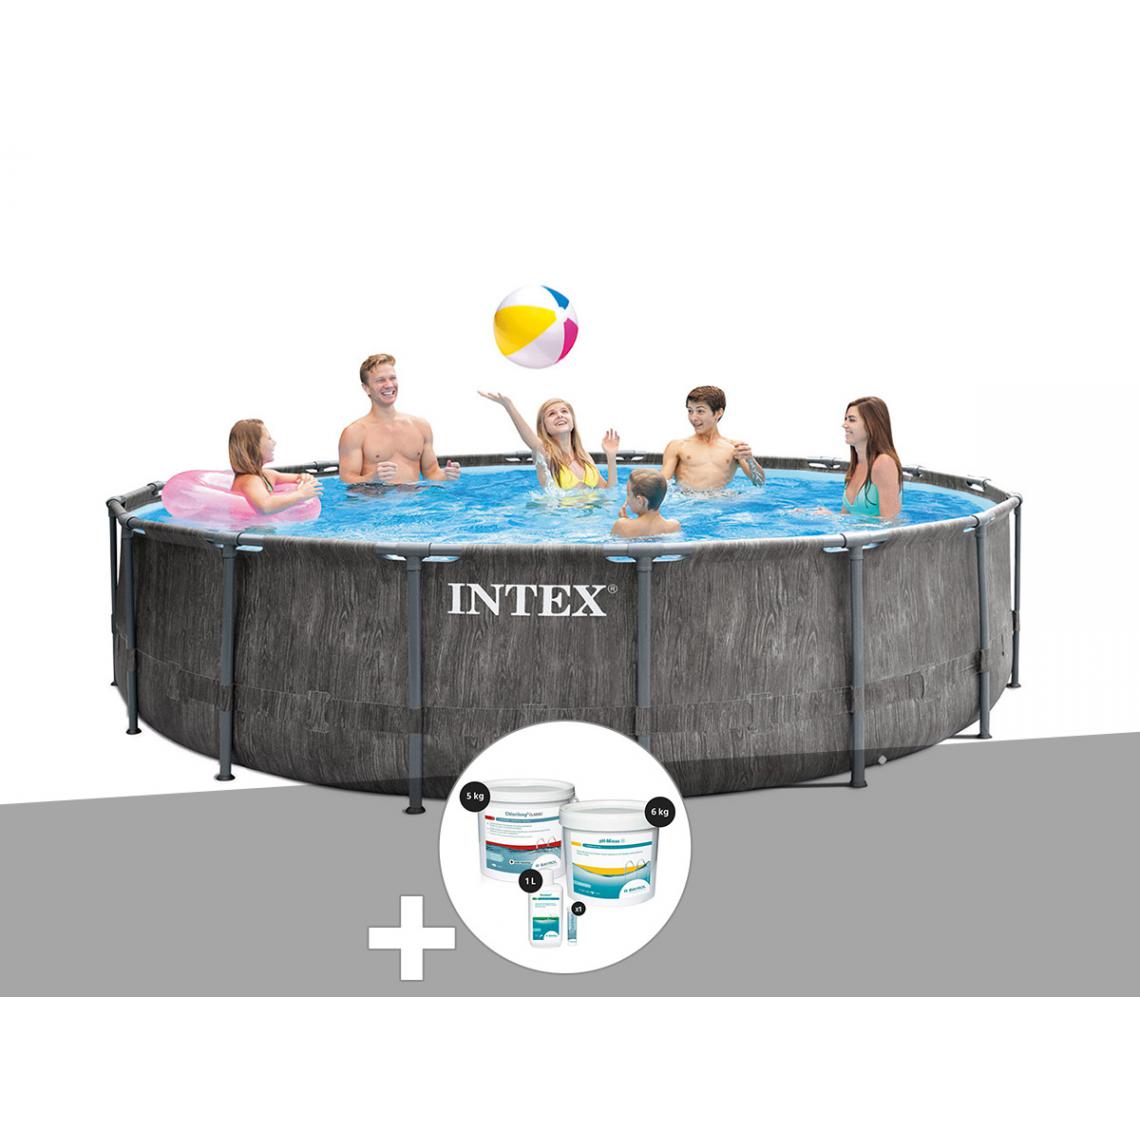 Intex - Kit piscine tubulaire Intex Baltik ronde 4,57 x 1,22 m + Kit de traitement au chlore - Piscine Tubulaire